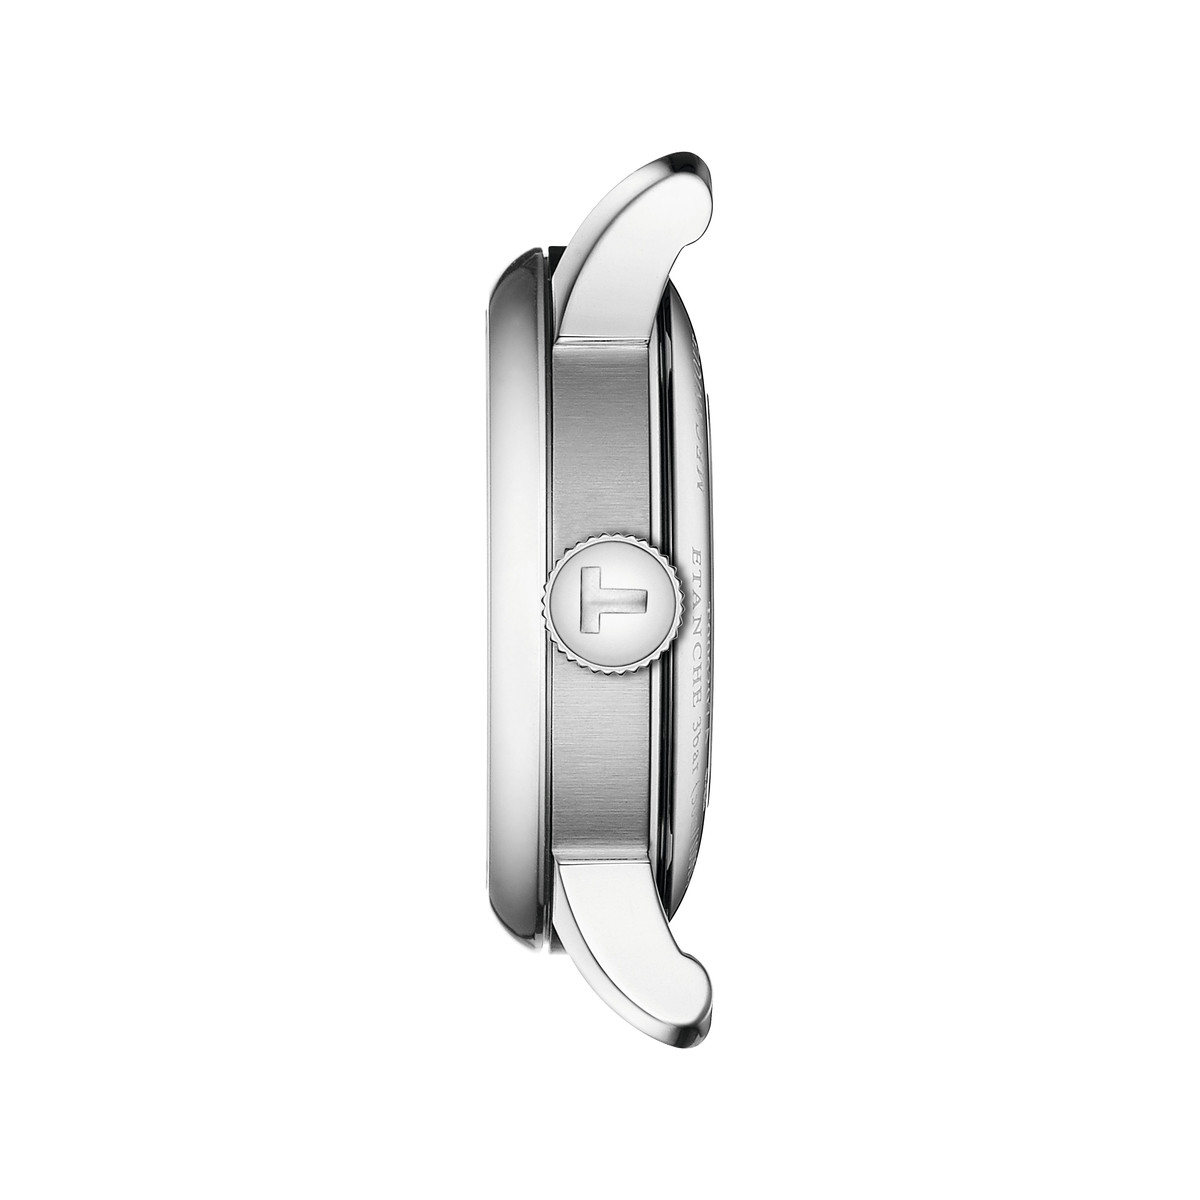 Montre TISSOT T-classic femme automatique, bracelet acier inoxydable gris - vue 2